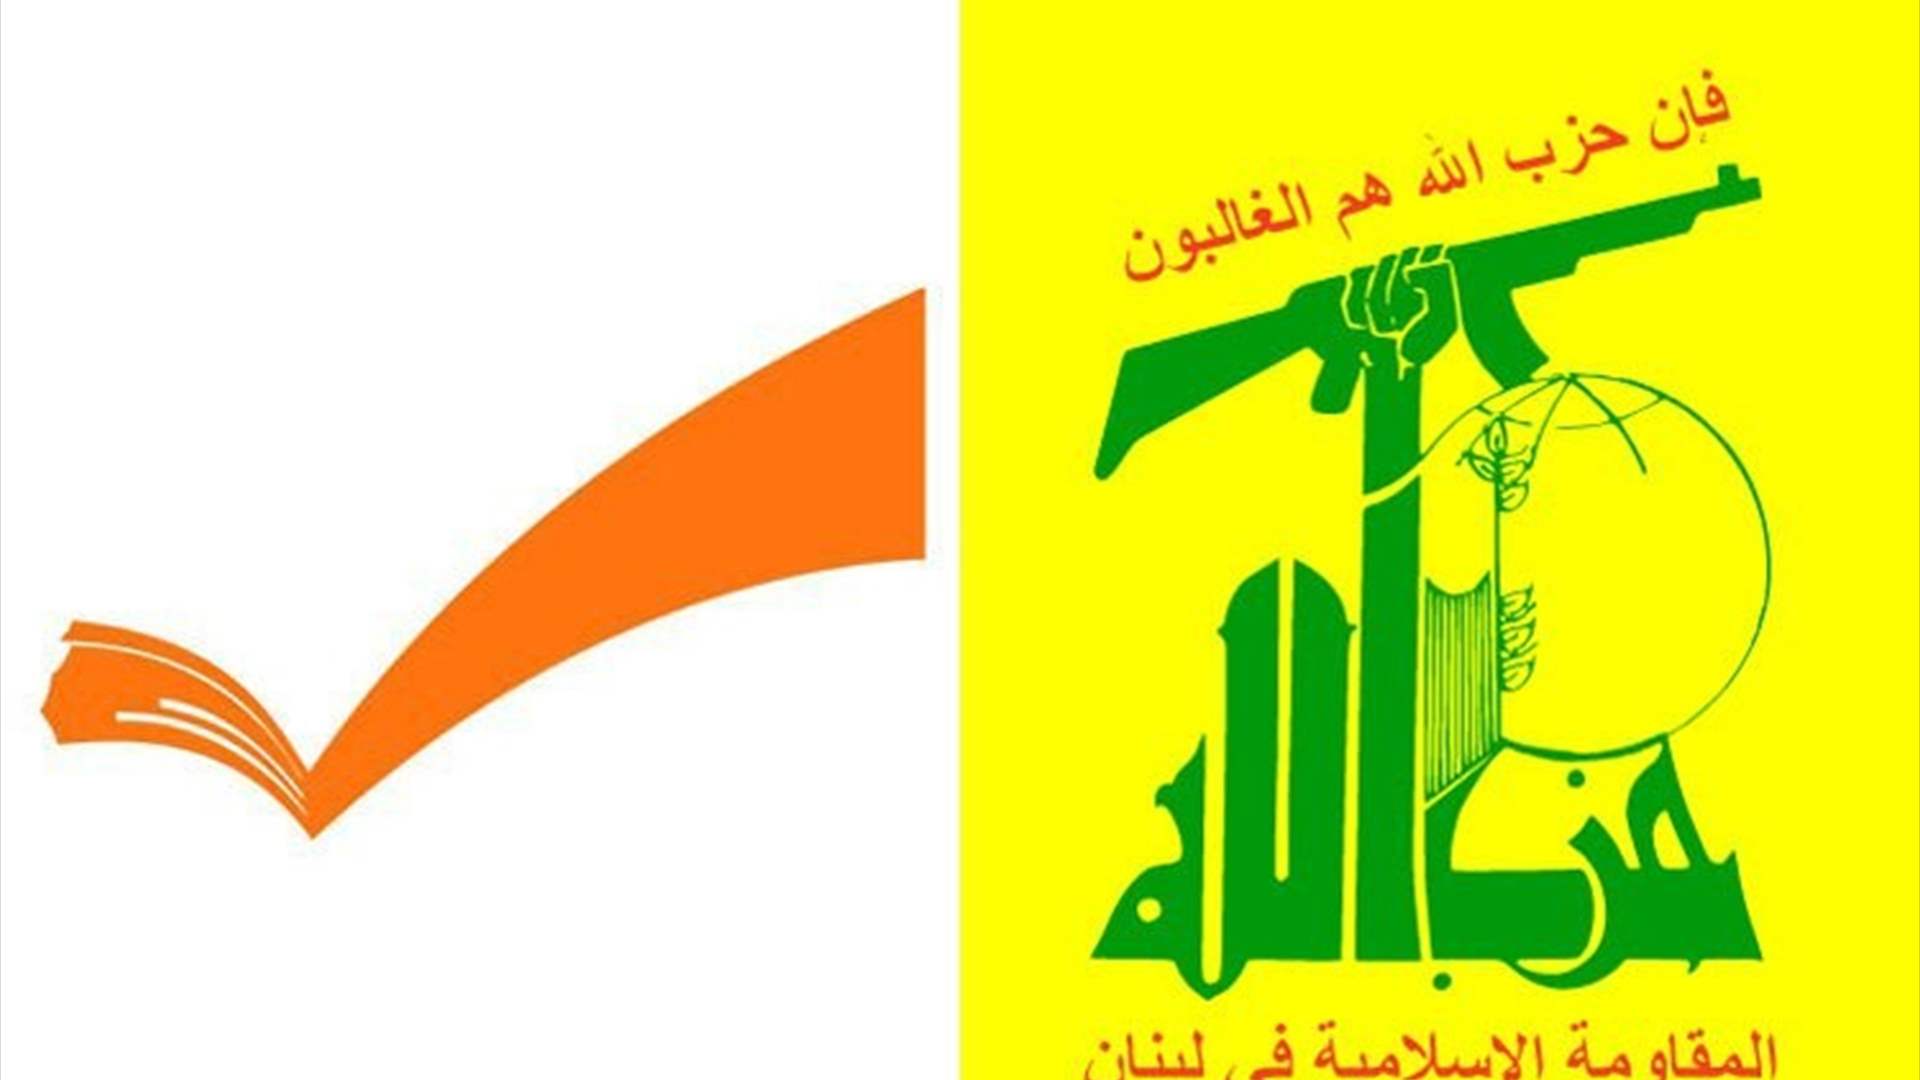 إلى أين وصل النقاش بين حزب الله والوطني الحر؟ وماذا عن الرئاسة؟ (الجمهورية)